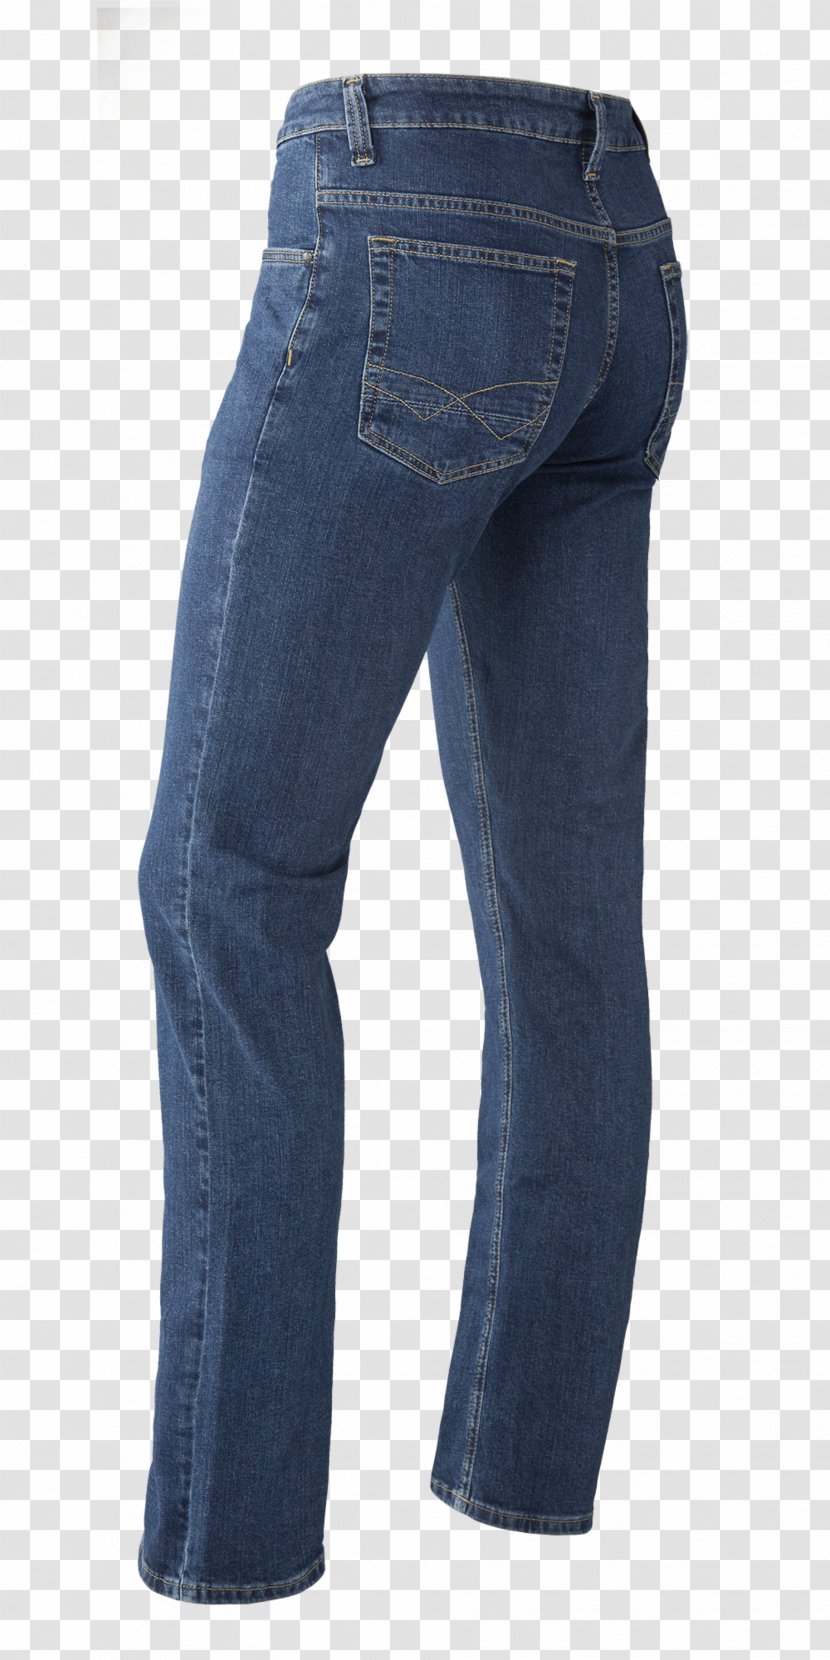 Jeans Denim Slim-fit Pants Pocket - Online Shopping Transparent PNG